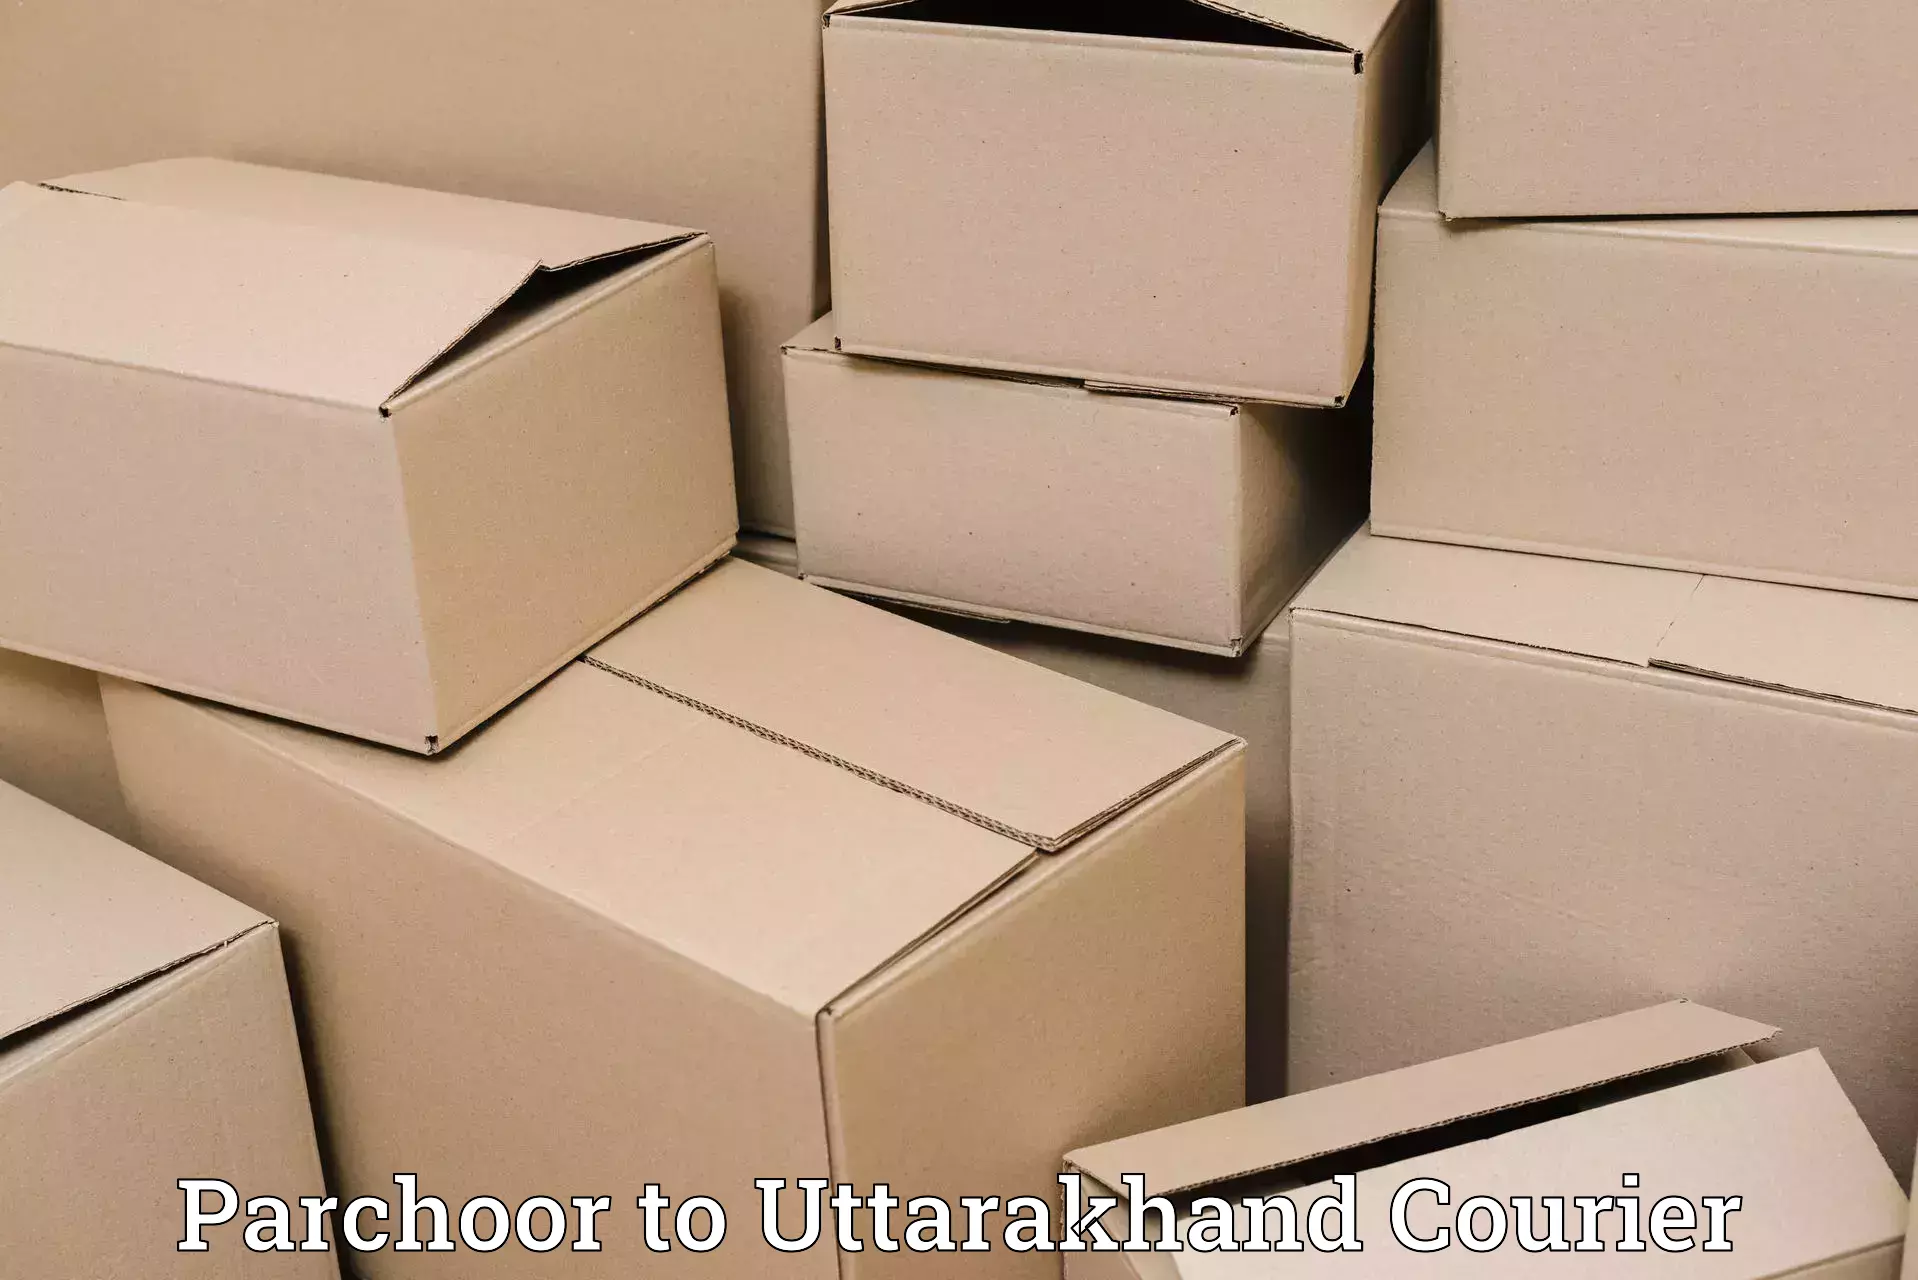 Reliable logistics providers Parchoor to Ramnagar